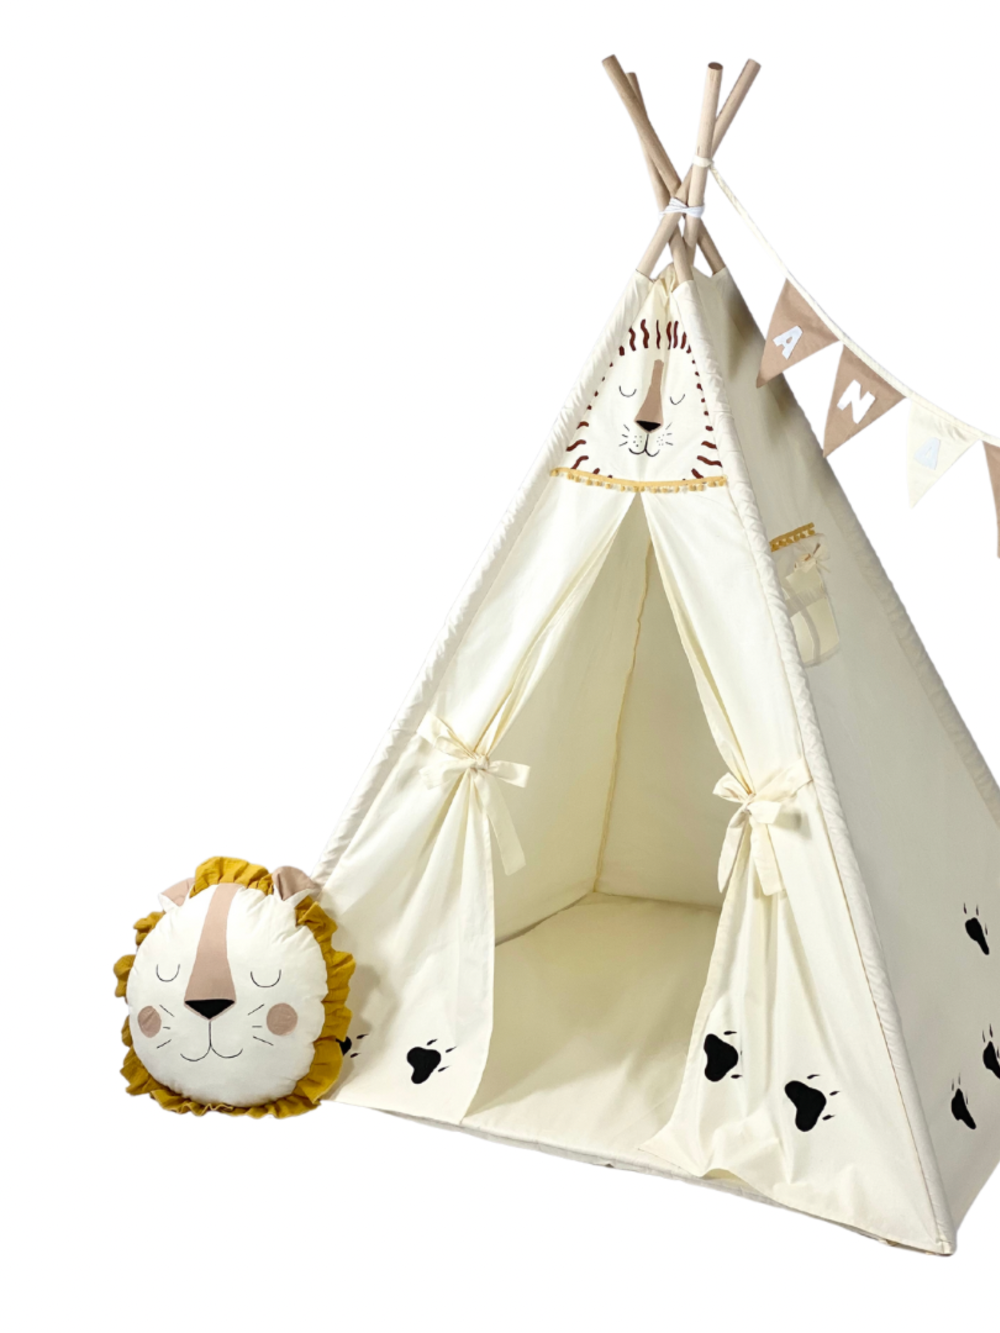 Children's Tent - teepee tent Adventure